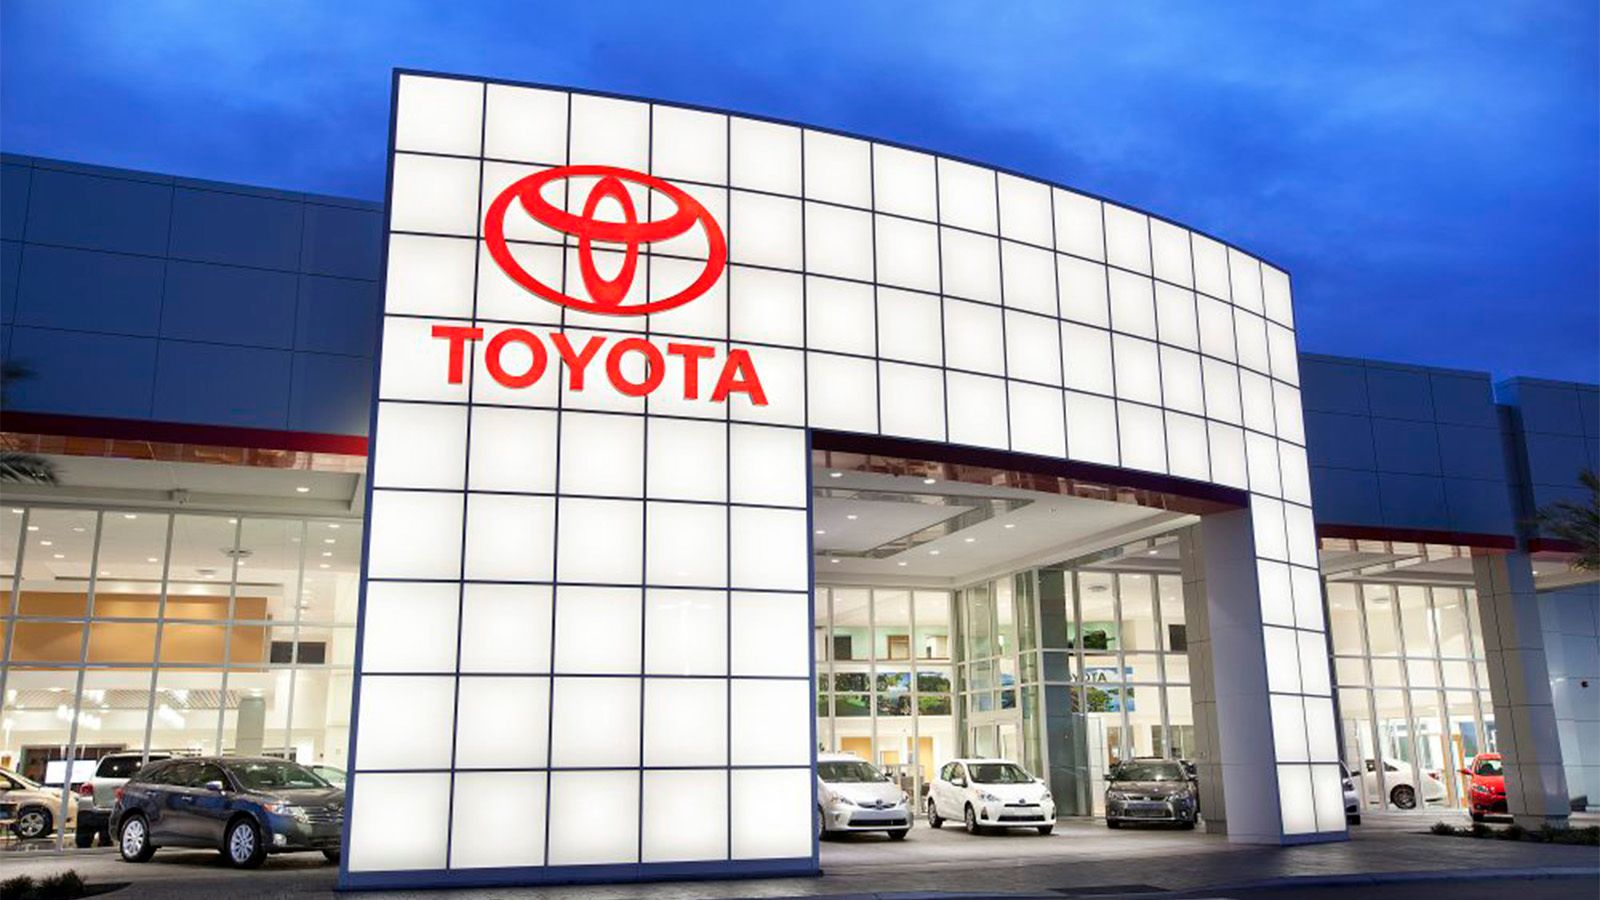 Toyota dealership facade